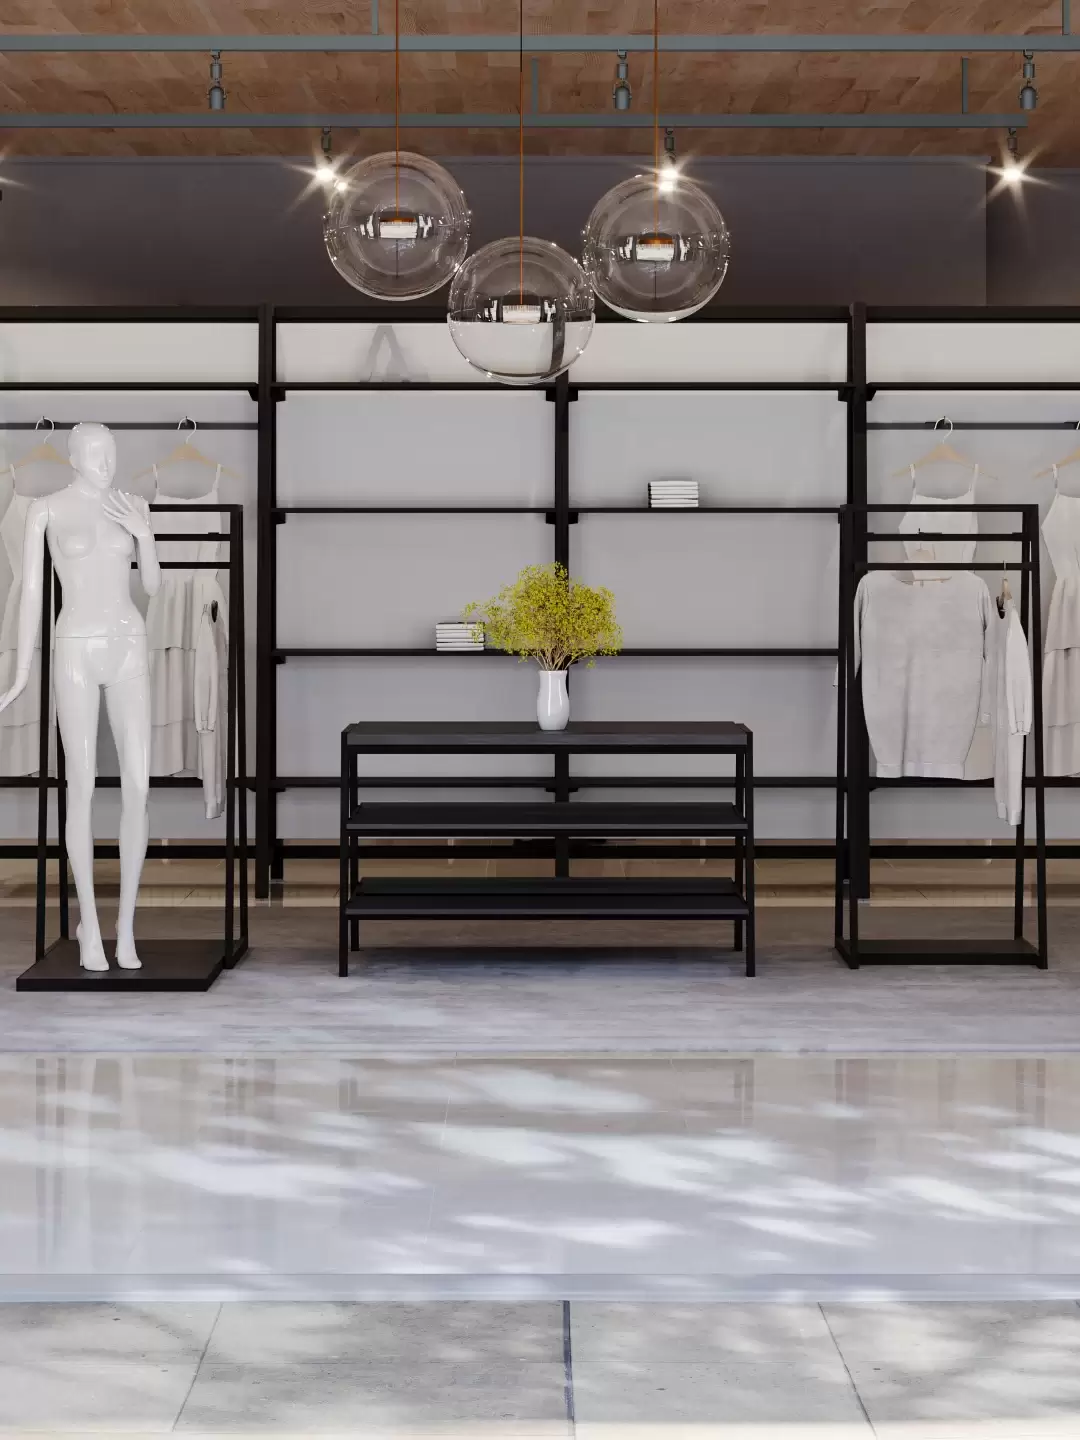 Modern Boutique - A Glimpse into Fashion's Future